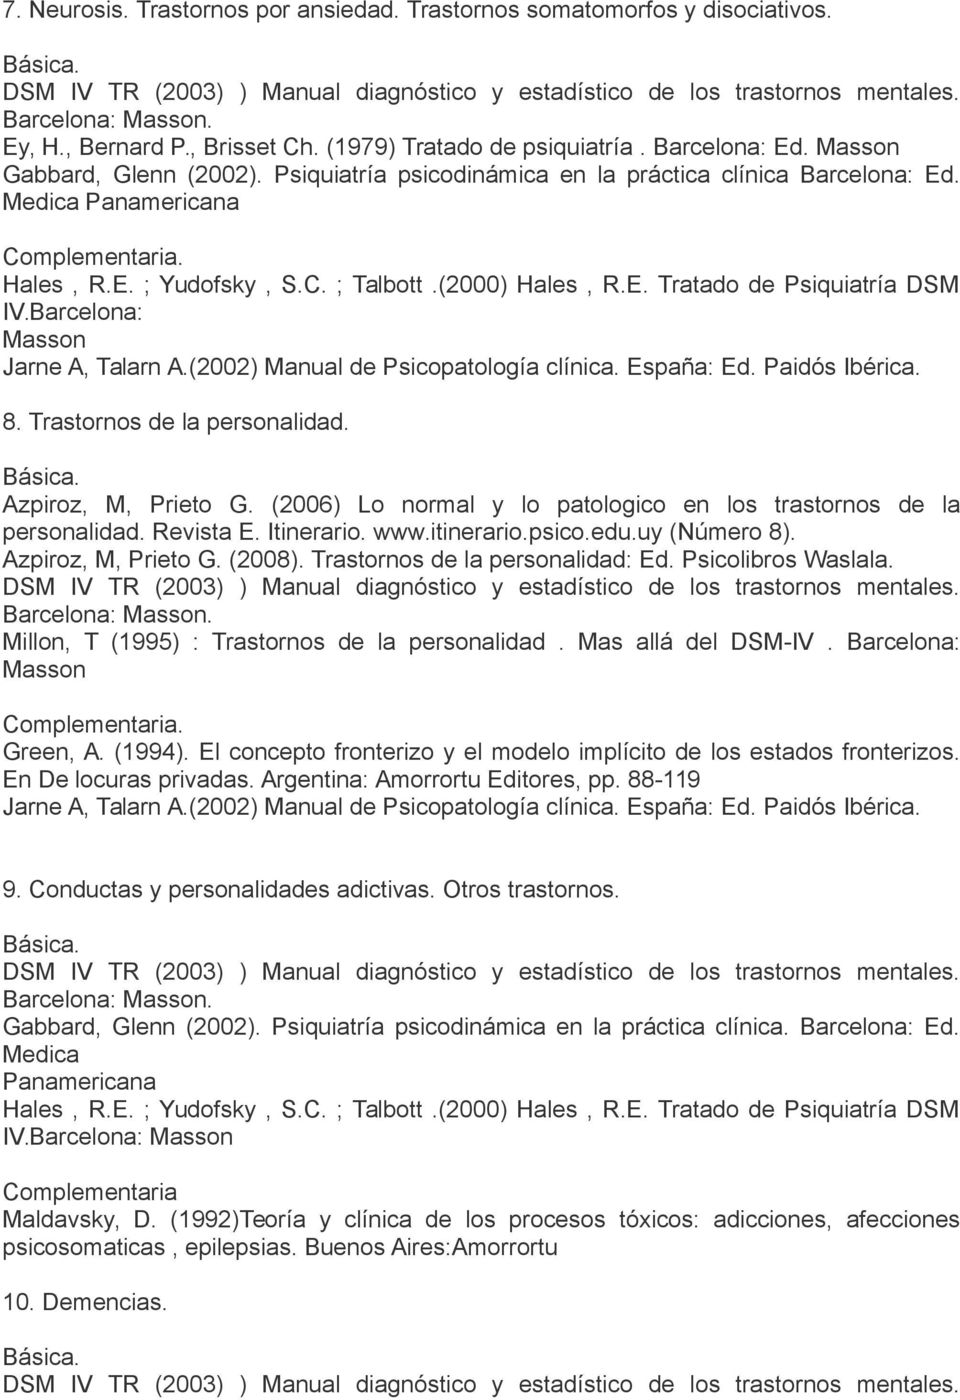 (2006) Lo normal y lo patologico en los trastornos de la personalidad. Revista E. Itinerario. www.itinerario.psico.edu.uy (Número 8). Azpiroz, M, Prieto G. (2008). Trastornos de la personalidad: Ed.